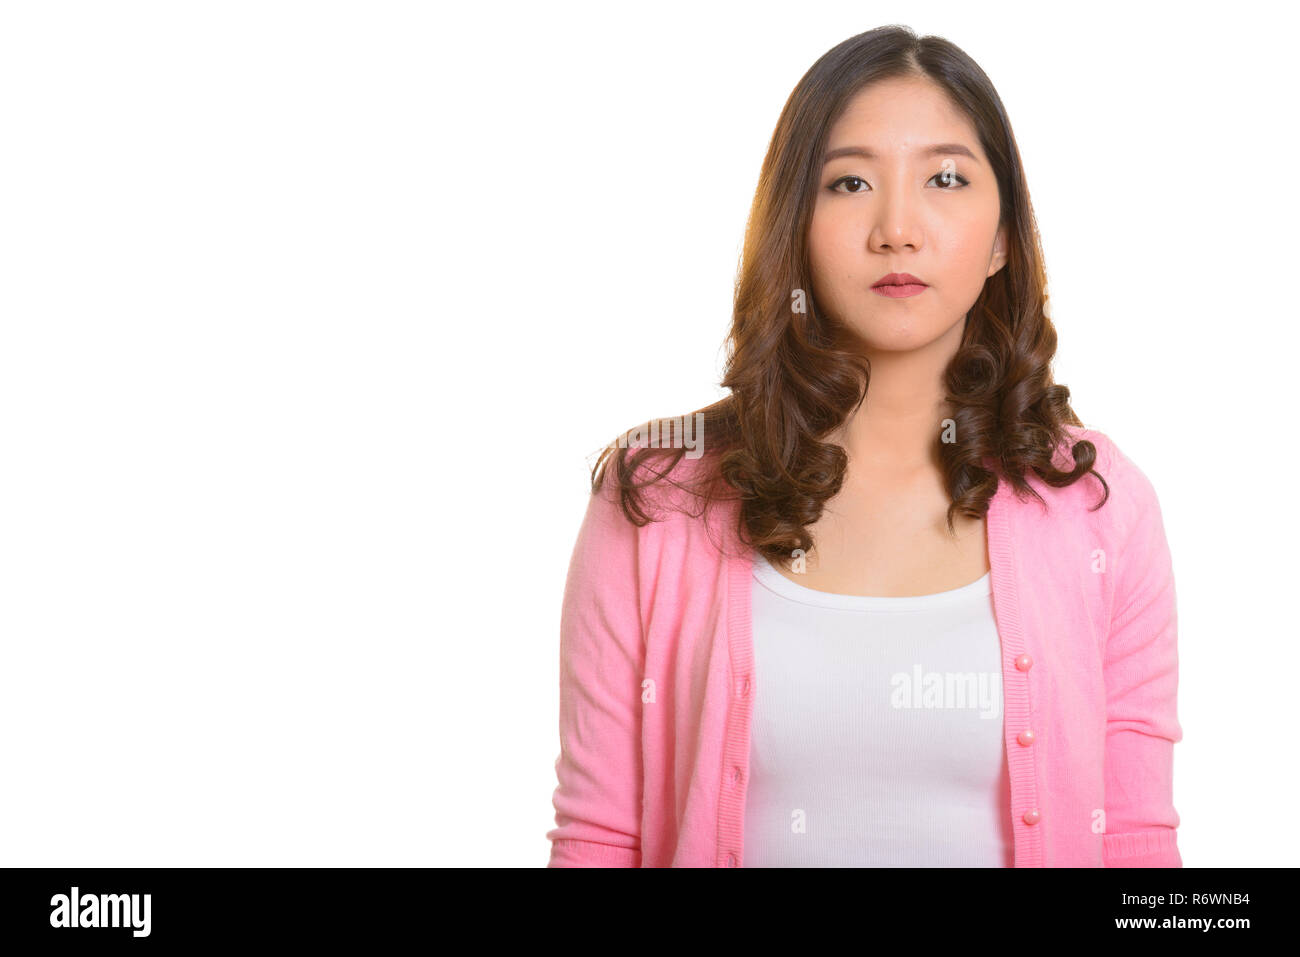 Porträt der jungen schönen asiatischen Frau gegen weißen Hintergrund Stockfoto